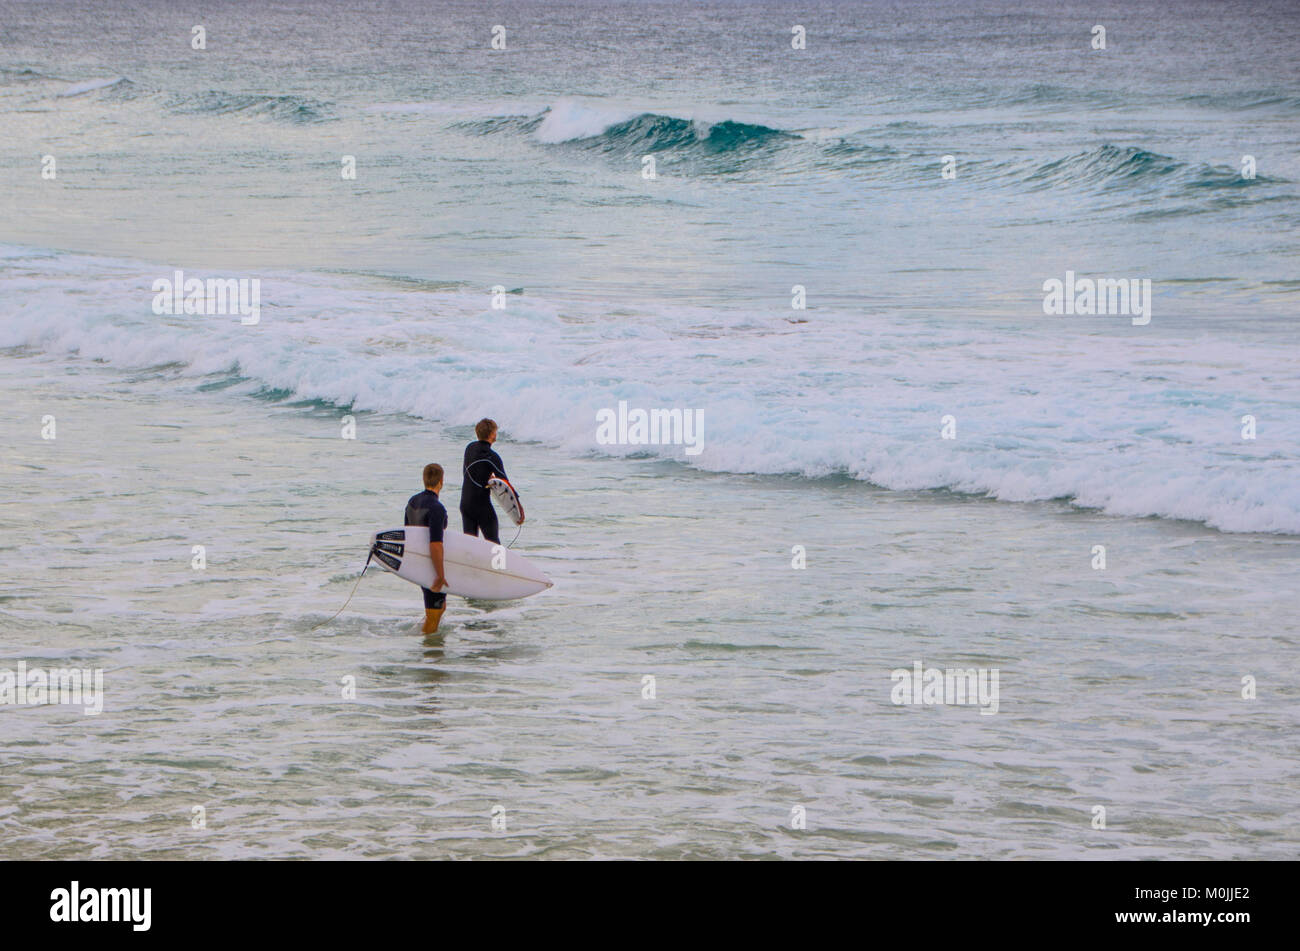 Zwei Surfer gehen Sie ins Wasser - Kirra Beach, Queensland, Australien Stockfoto